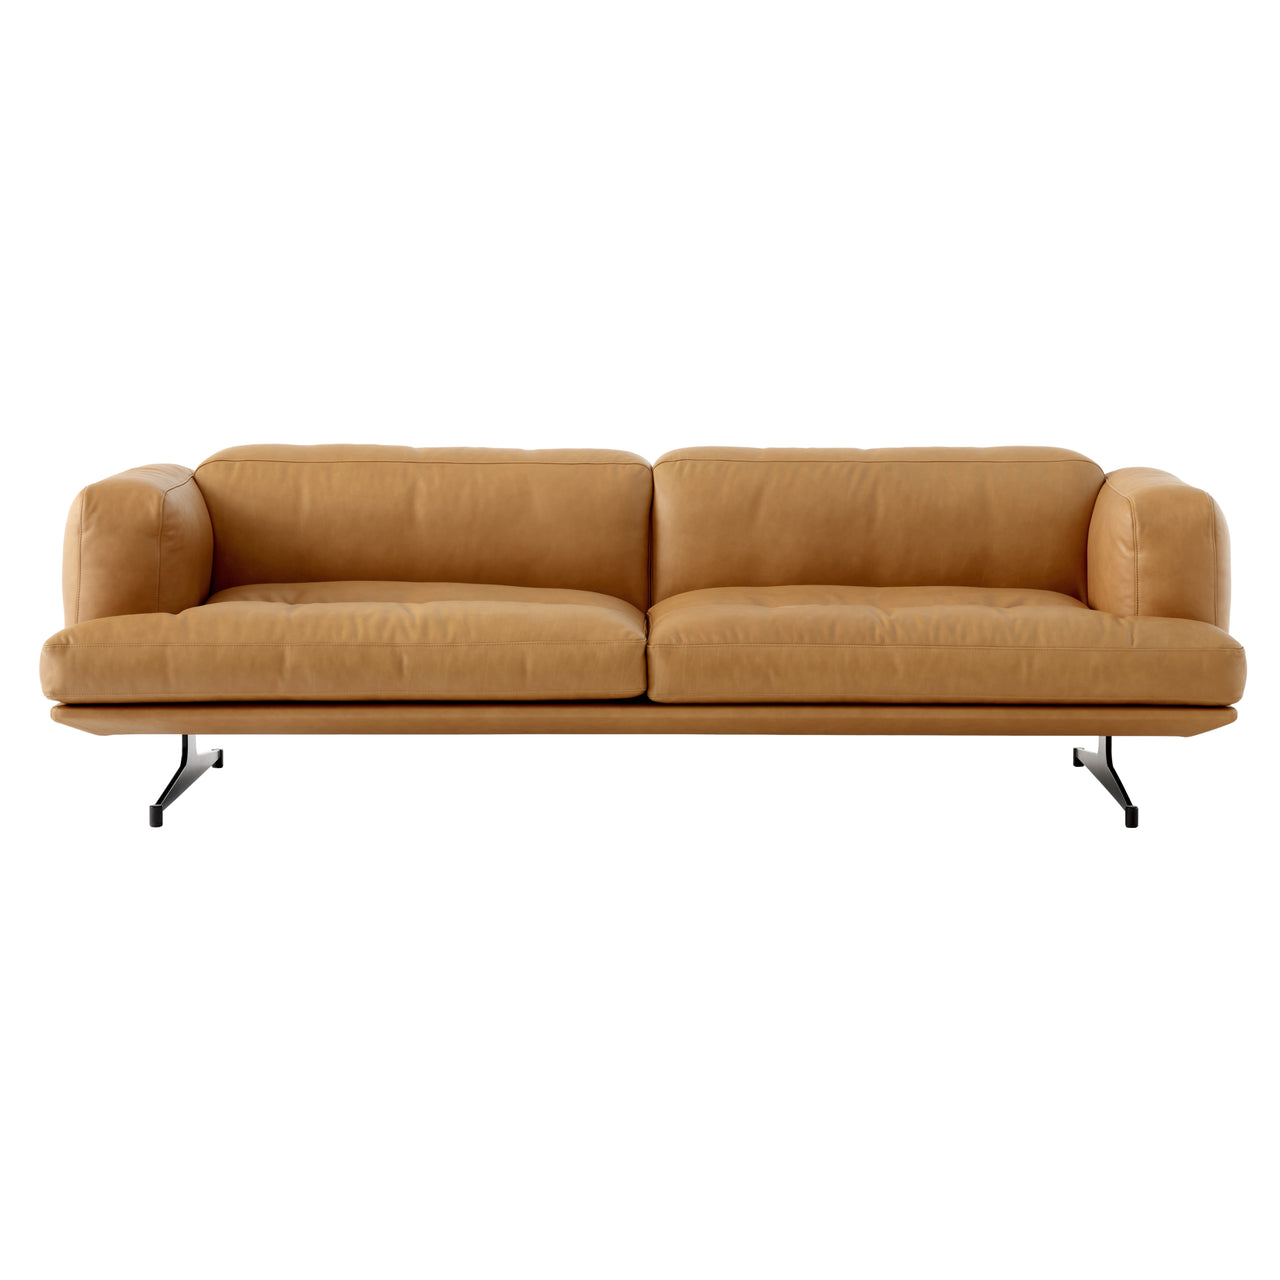 Inland Sofa: AV22 + AV23 + 3 Seater + Cognac Noble Leather